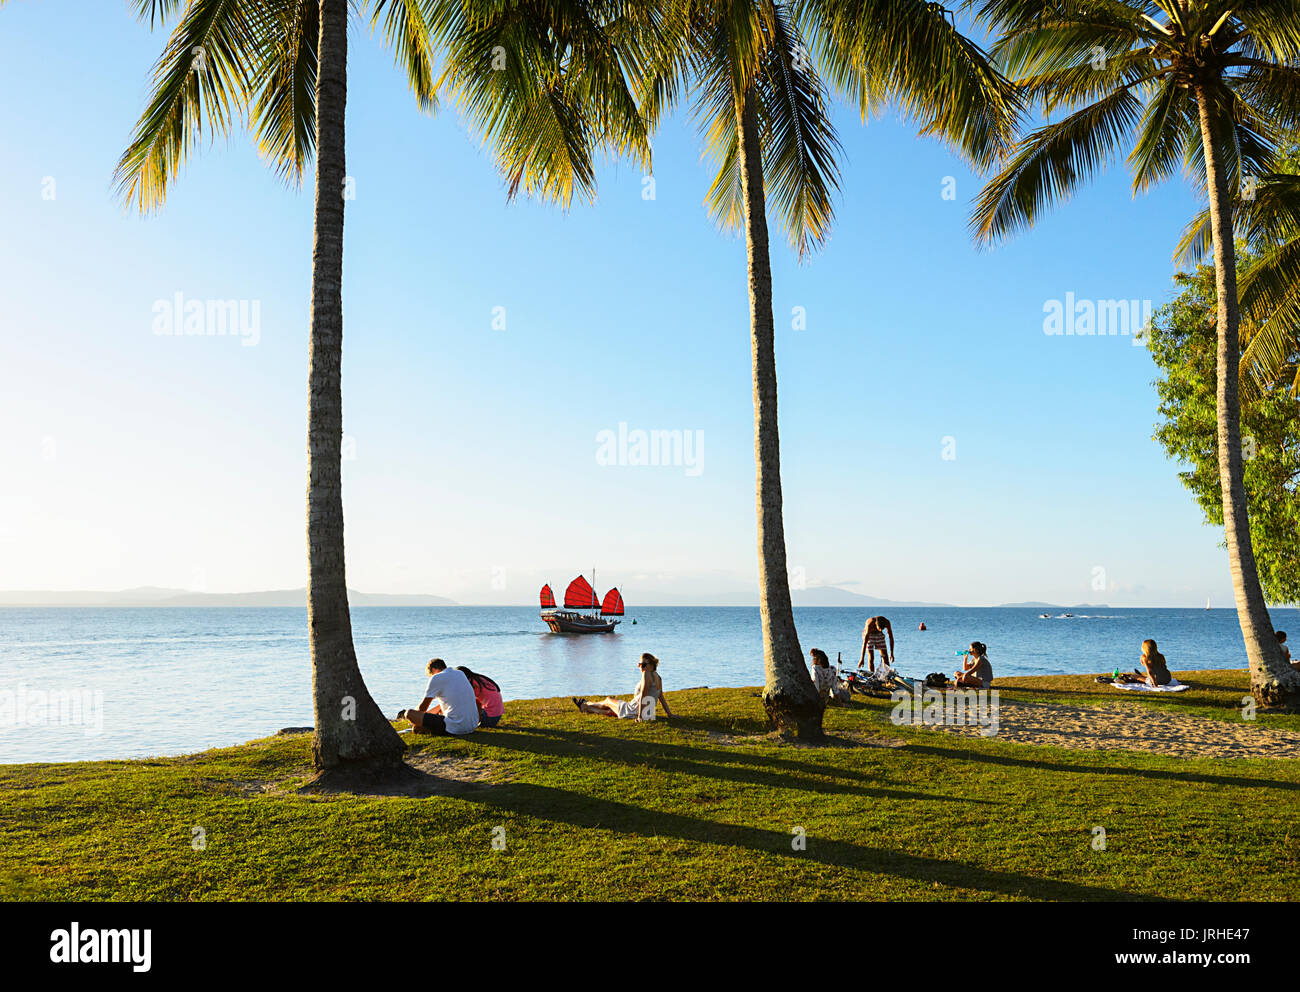 Eine Sunset Cruise chinesische Dschunke Segel Vergangenheit Menschen entspannen in Rex Smeal Park, Port Douglas, Far North Queensland, FNQ, QLD, Australien Stockfoto